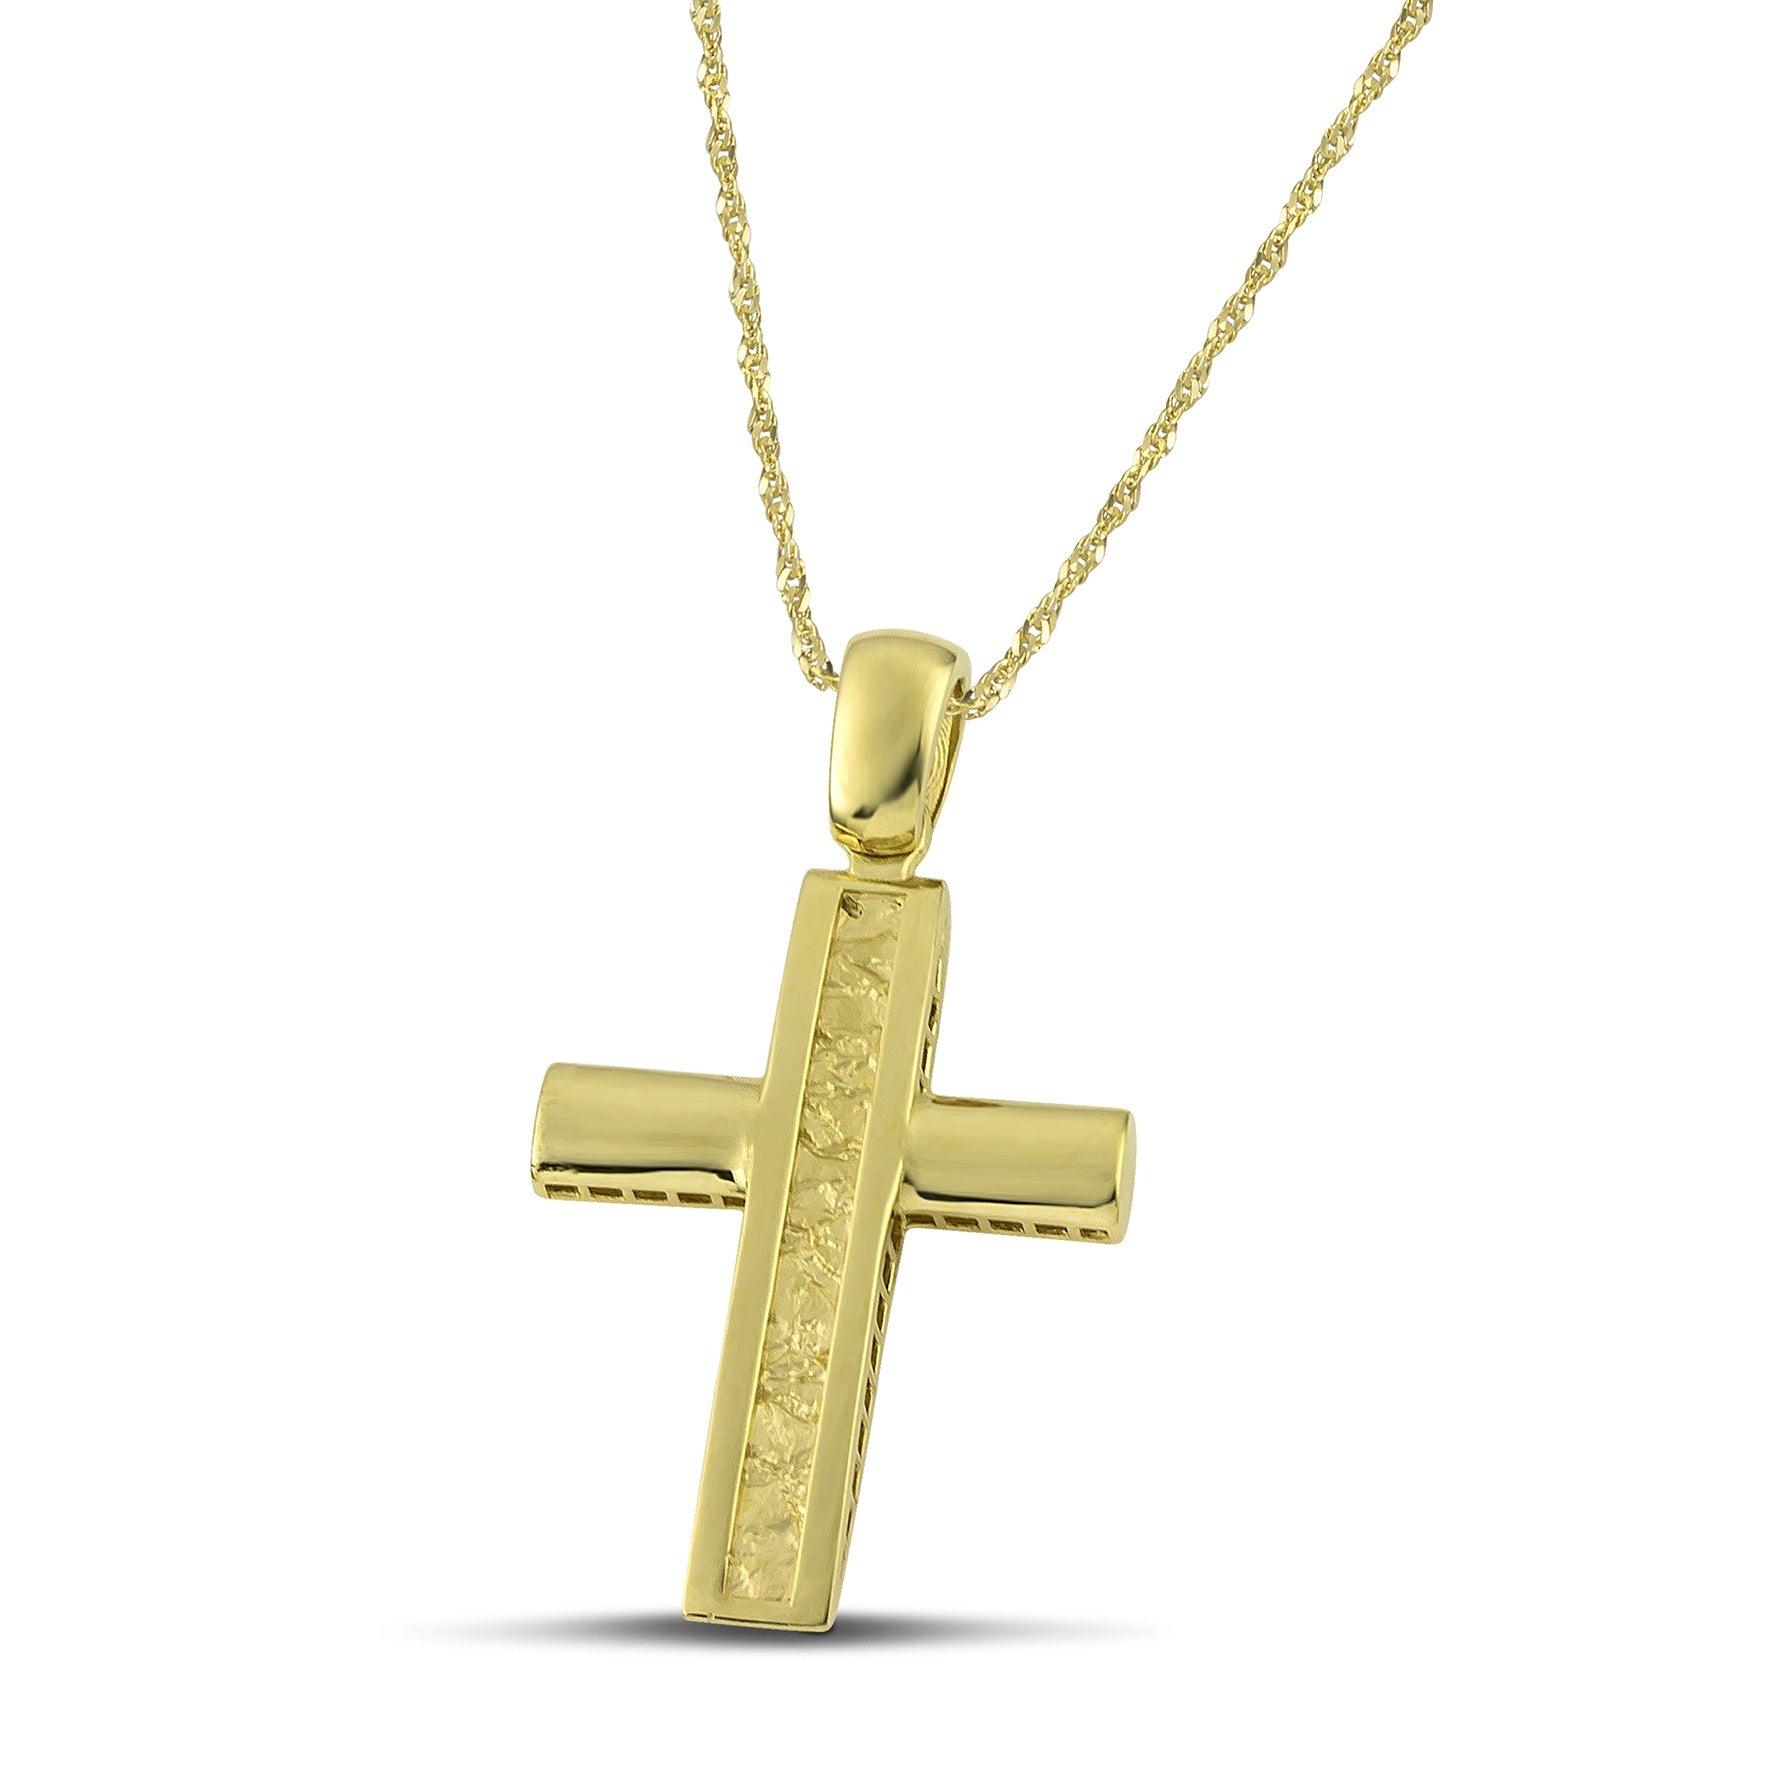 Ανδρικός σταυρός βάπτισης από χρυσό Κ14, ανάγλυφος, σε λεπτή, στριφτή  αλυσίδα. 